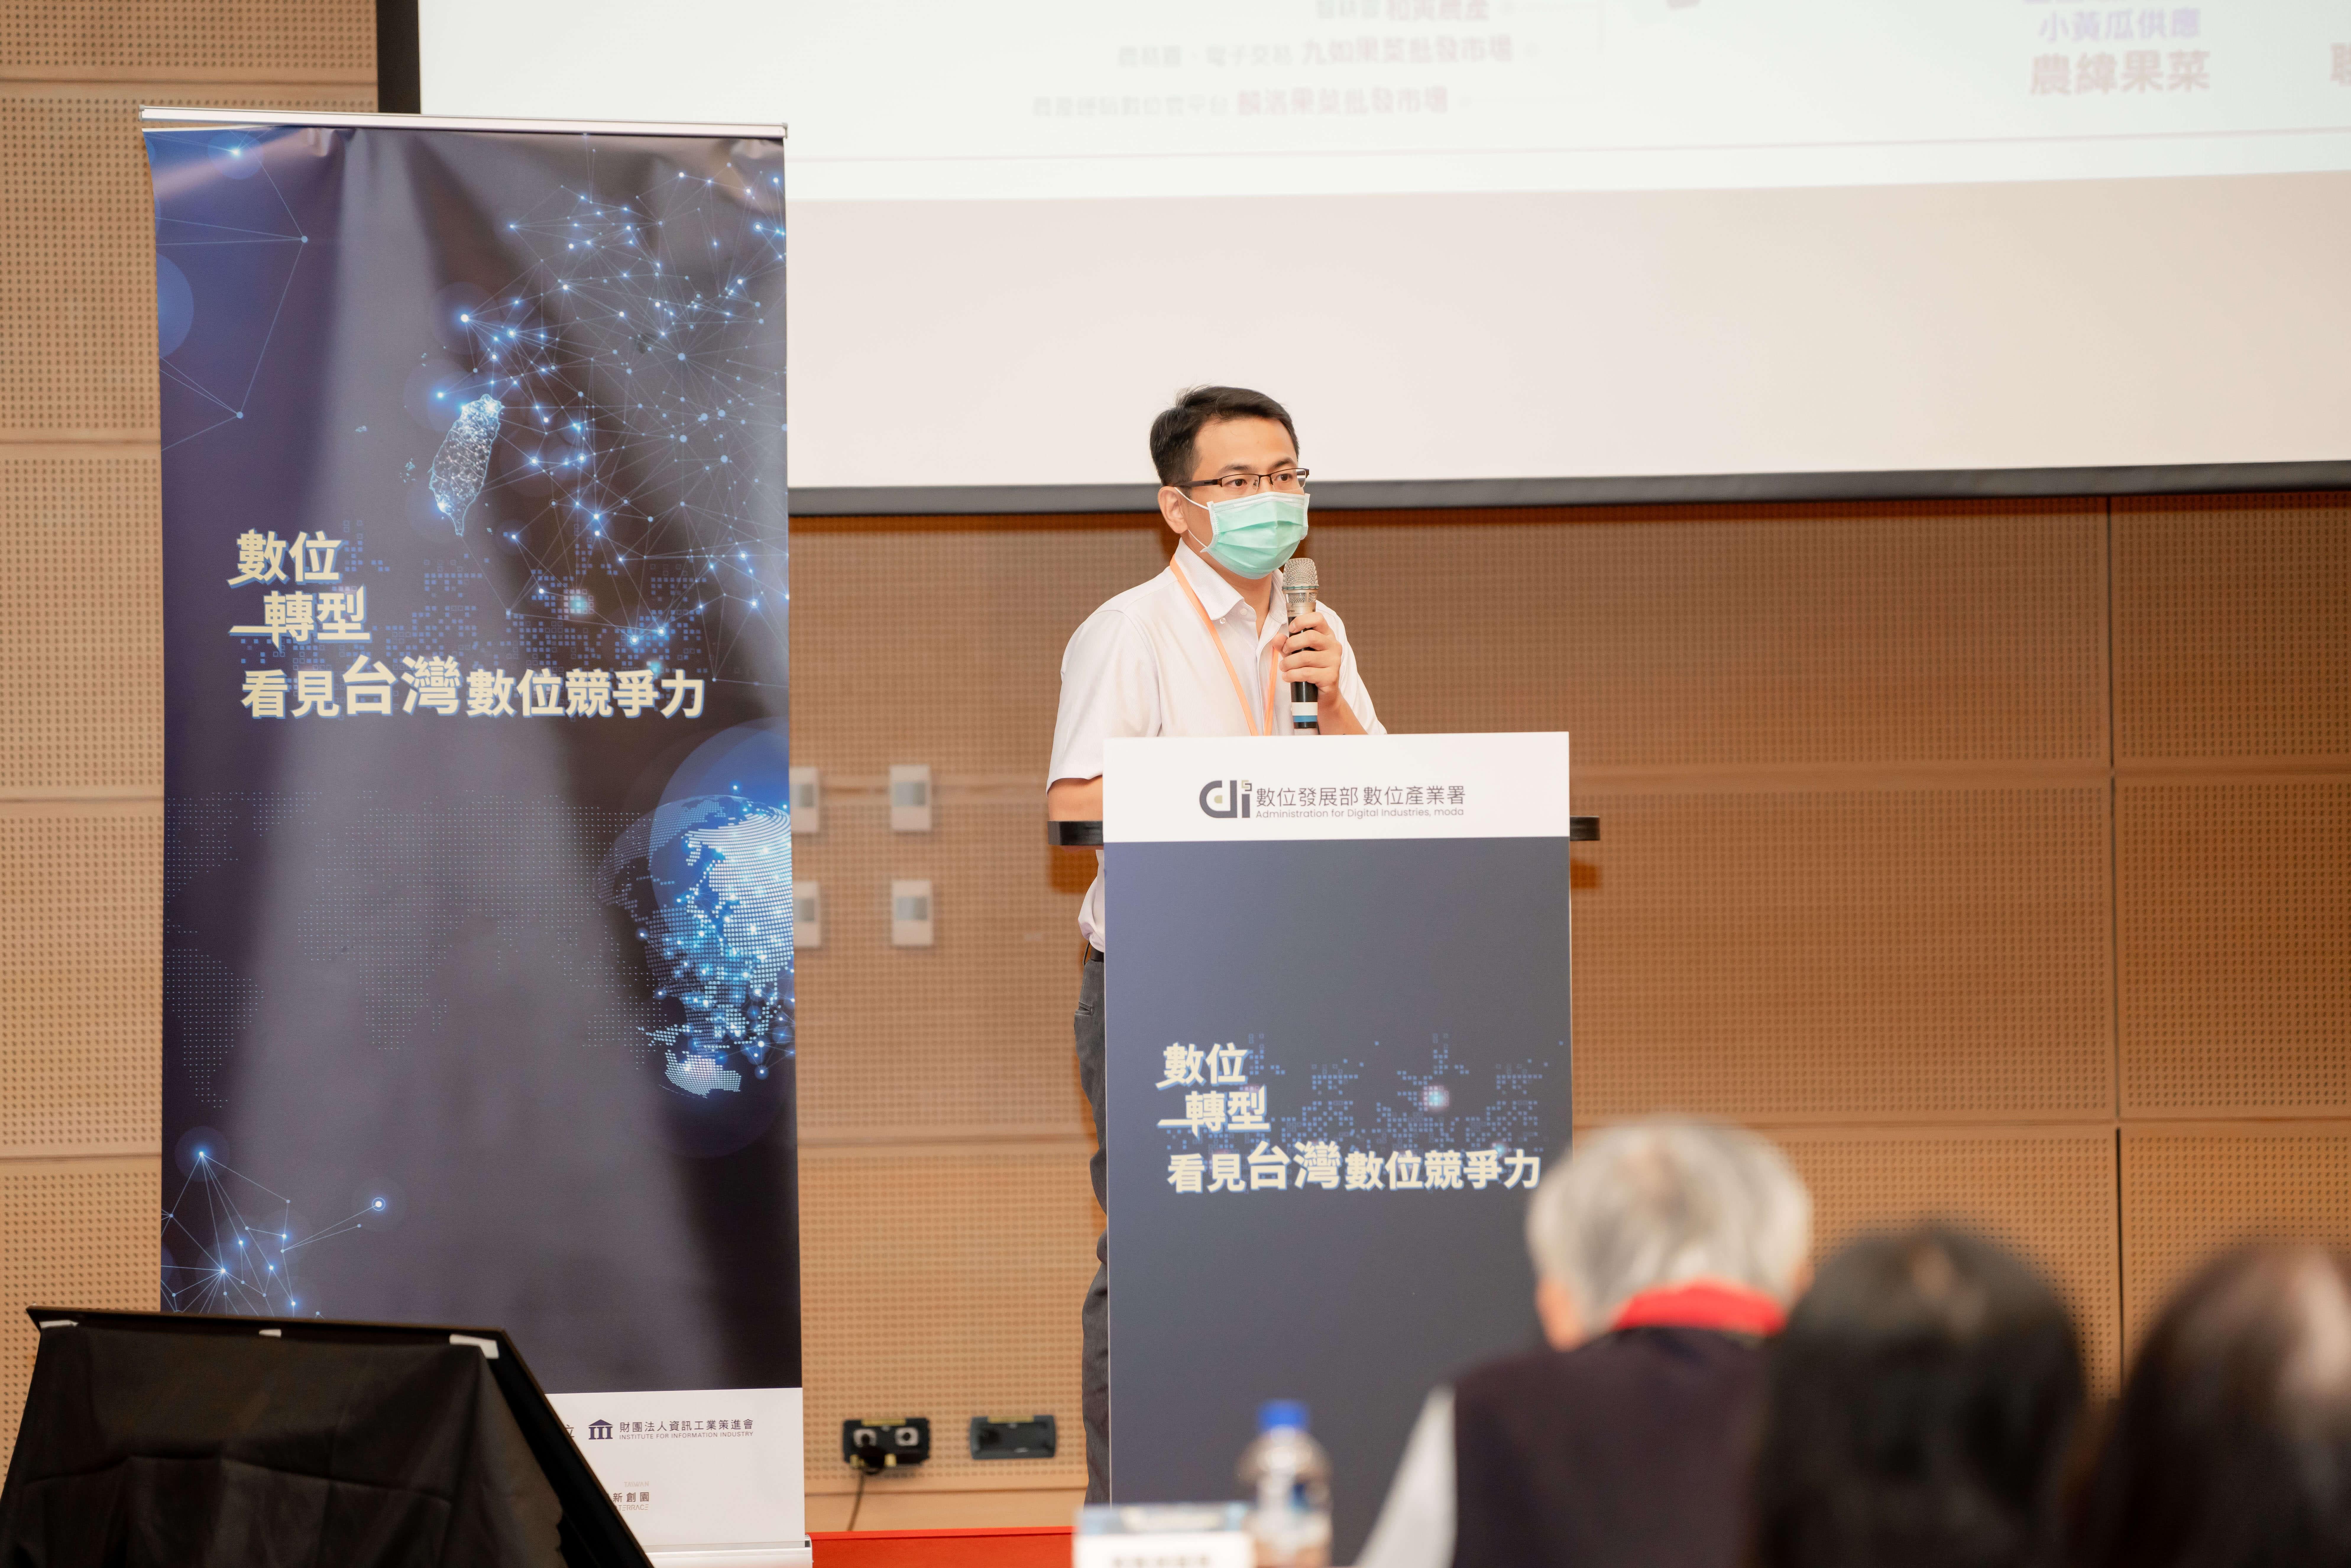 國際論壇，凌聚總經理站在台上演講照片